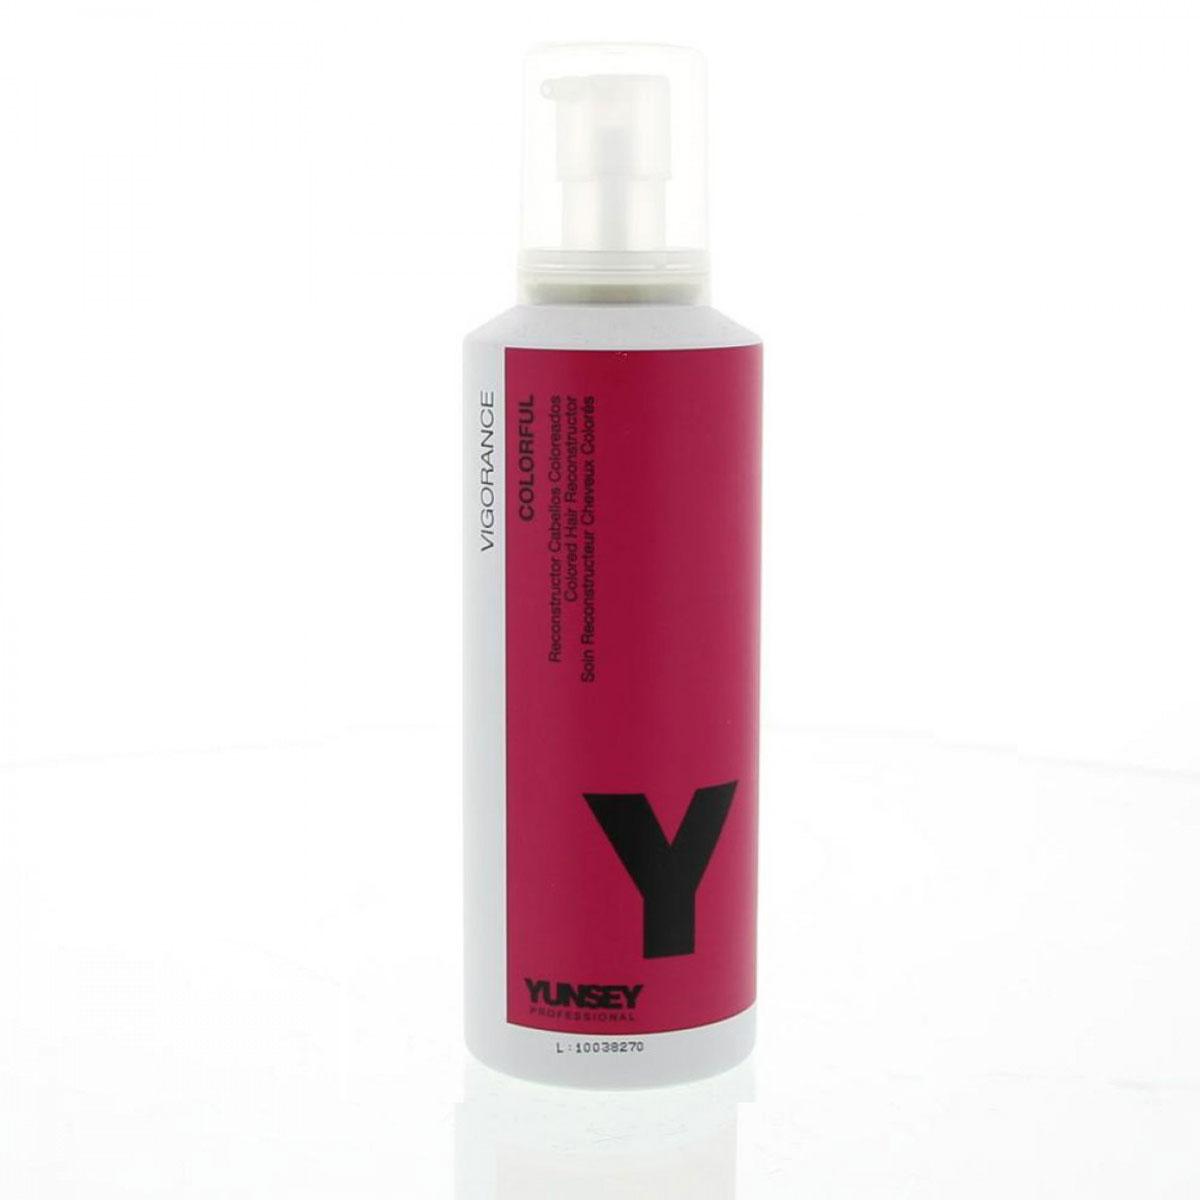 احیاء کننده و محافظ موهای رنگ شده - Yunsey Vigorance Colorful Colored Hair Reconstructor Treatment